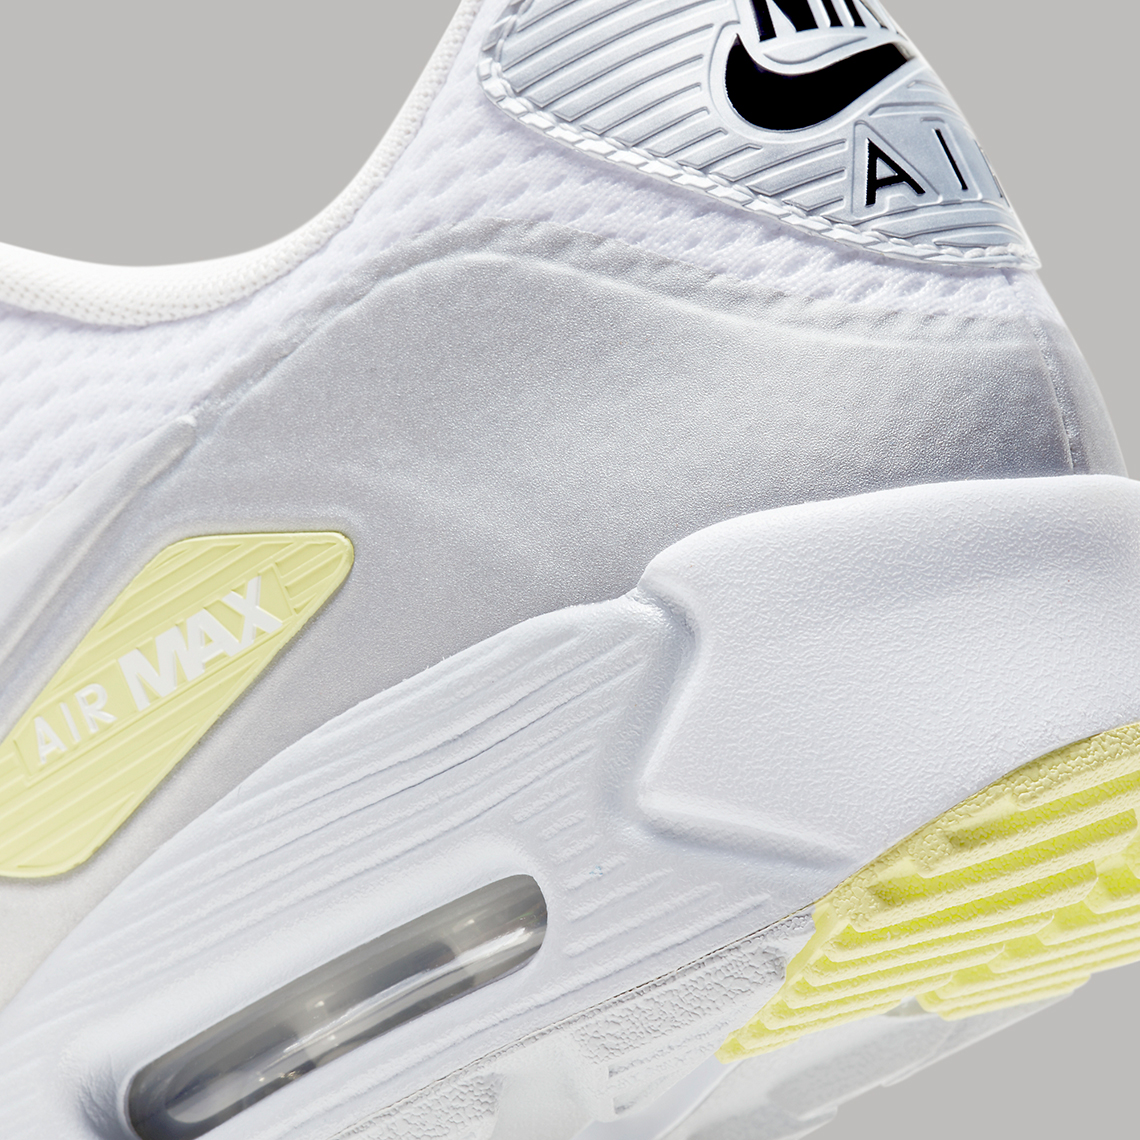 Nike Air Max 90 Golf Infrared CU9978-103 Release Date | SneakerNews.com